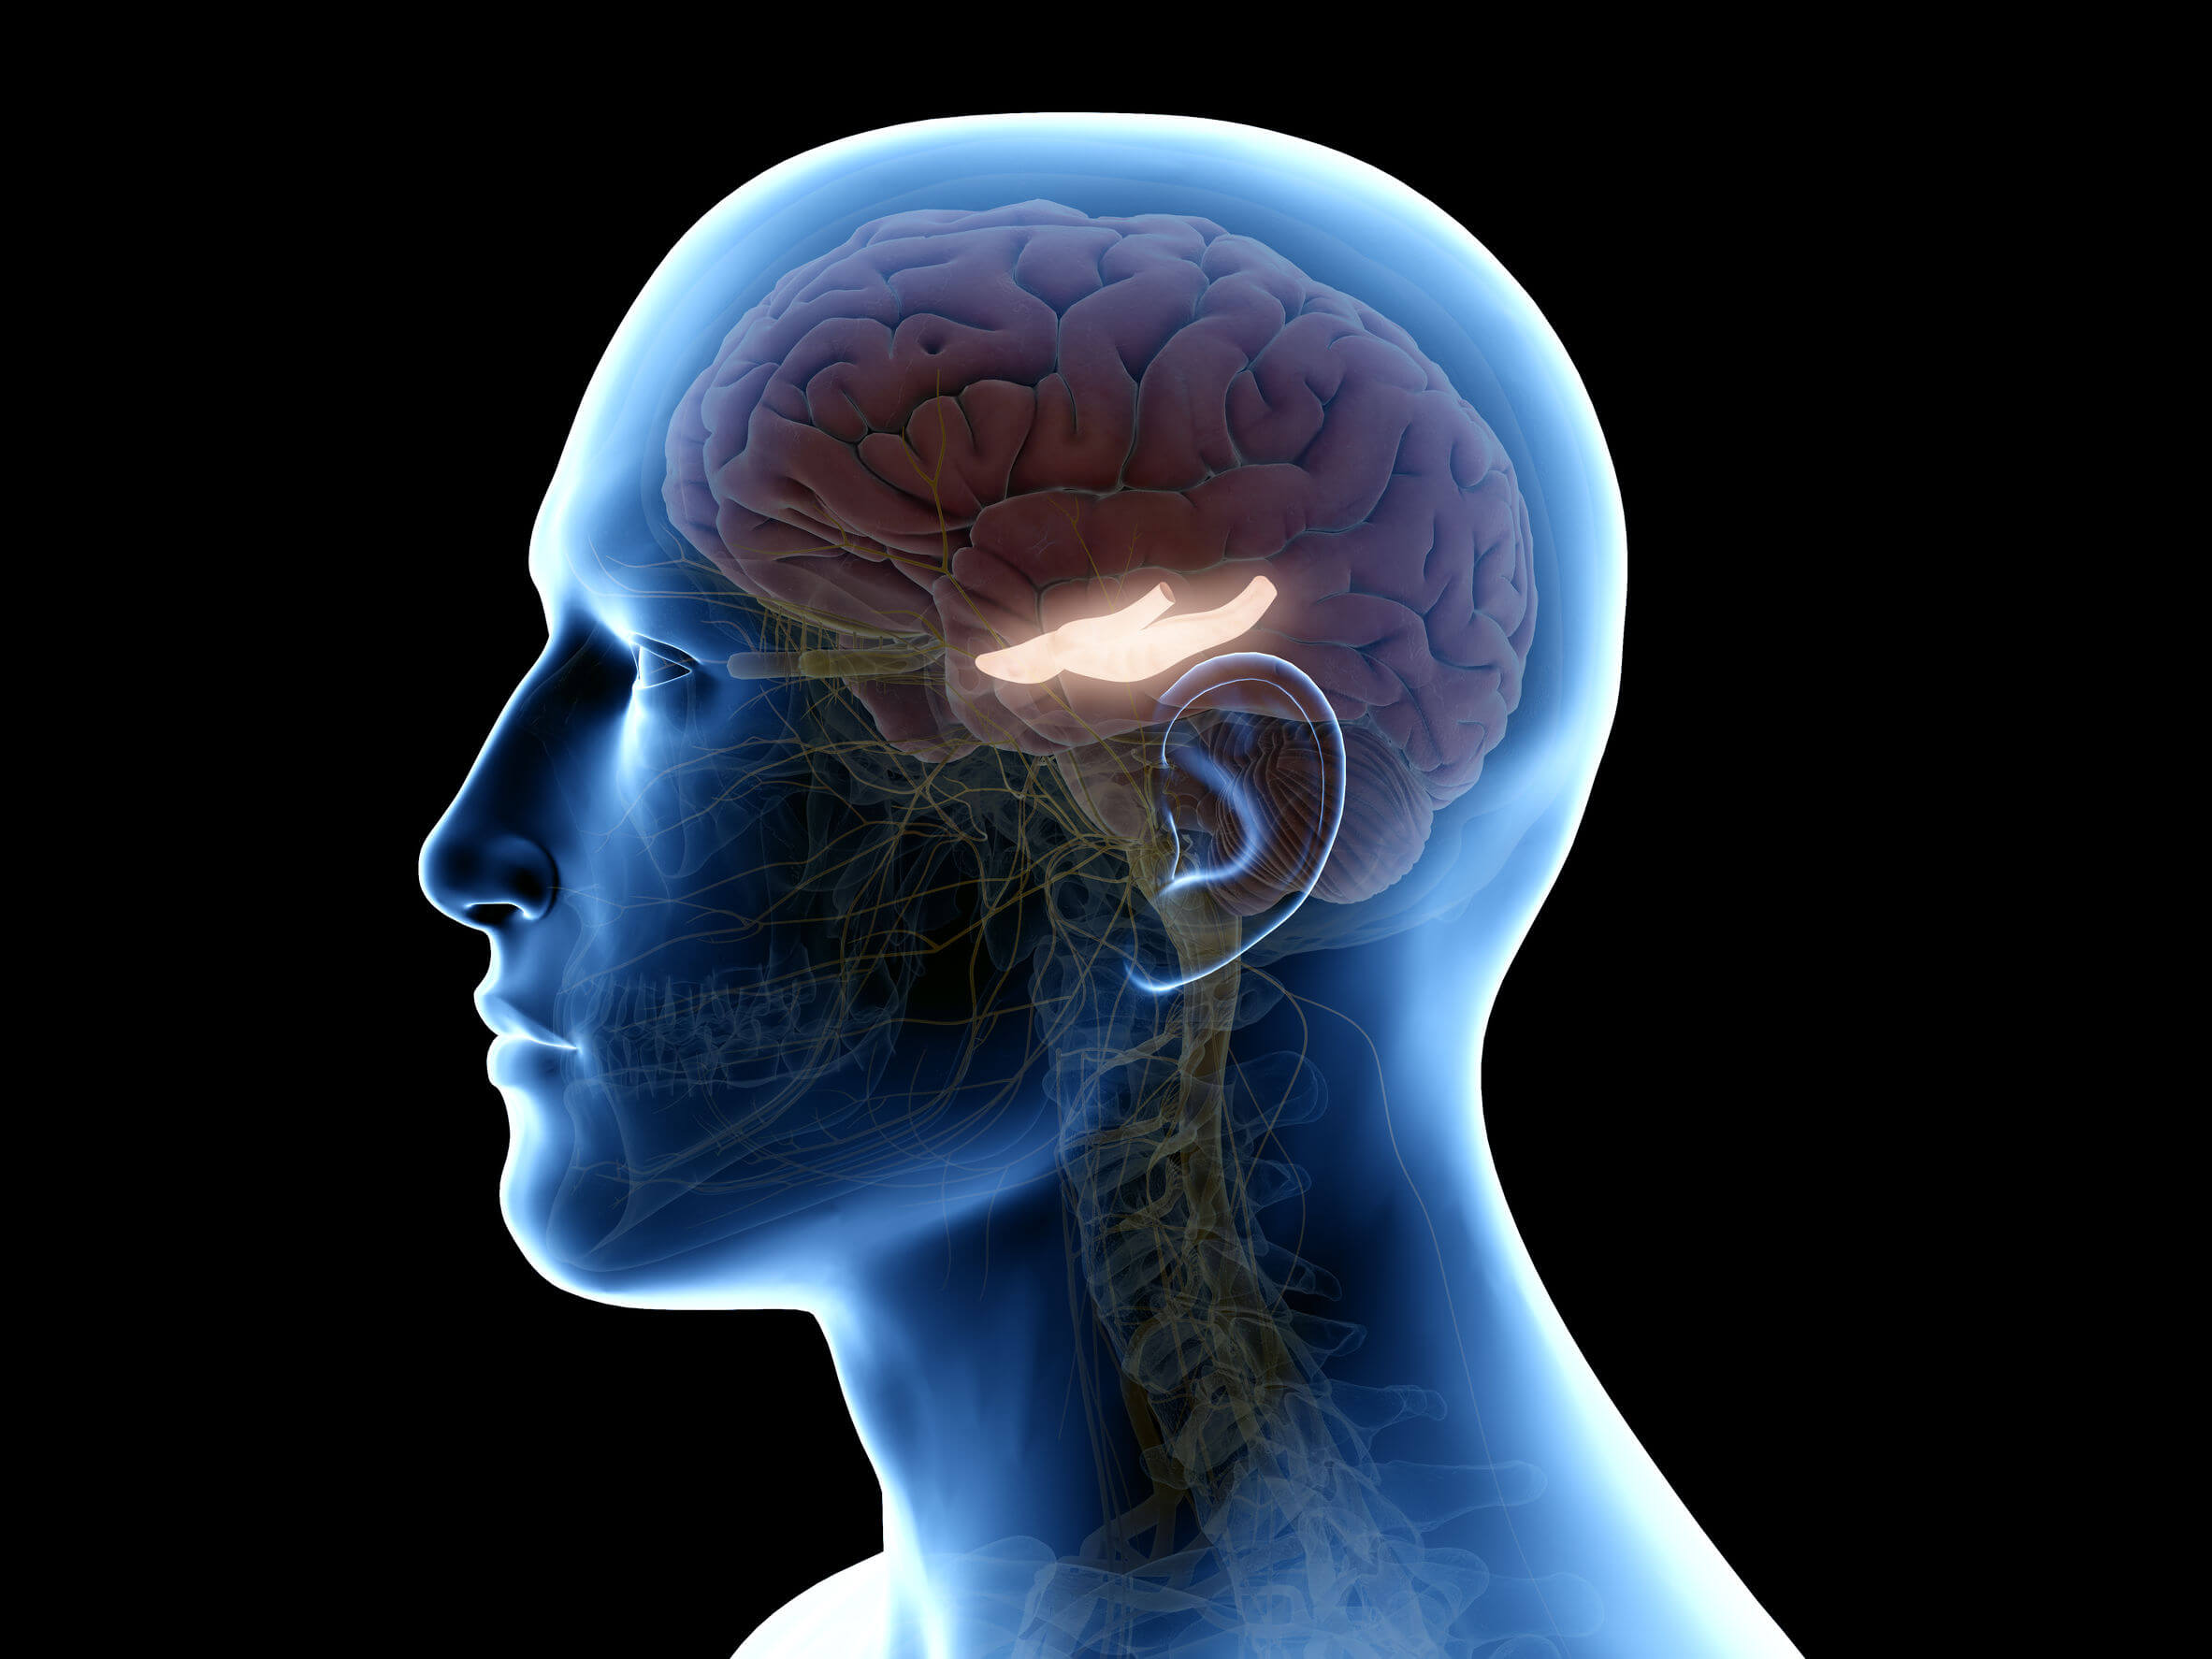 O hipocampo está localizado na parte interna do cérebro.